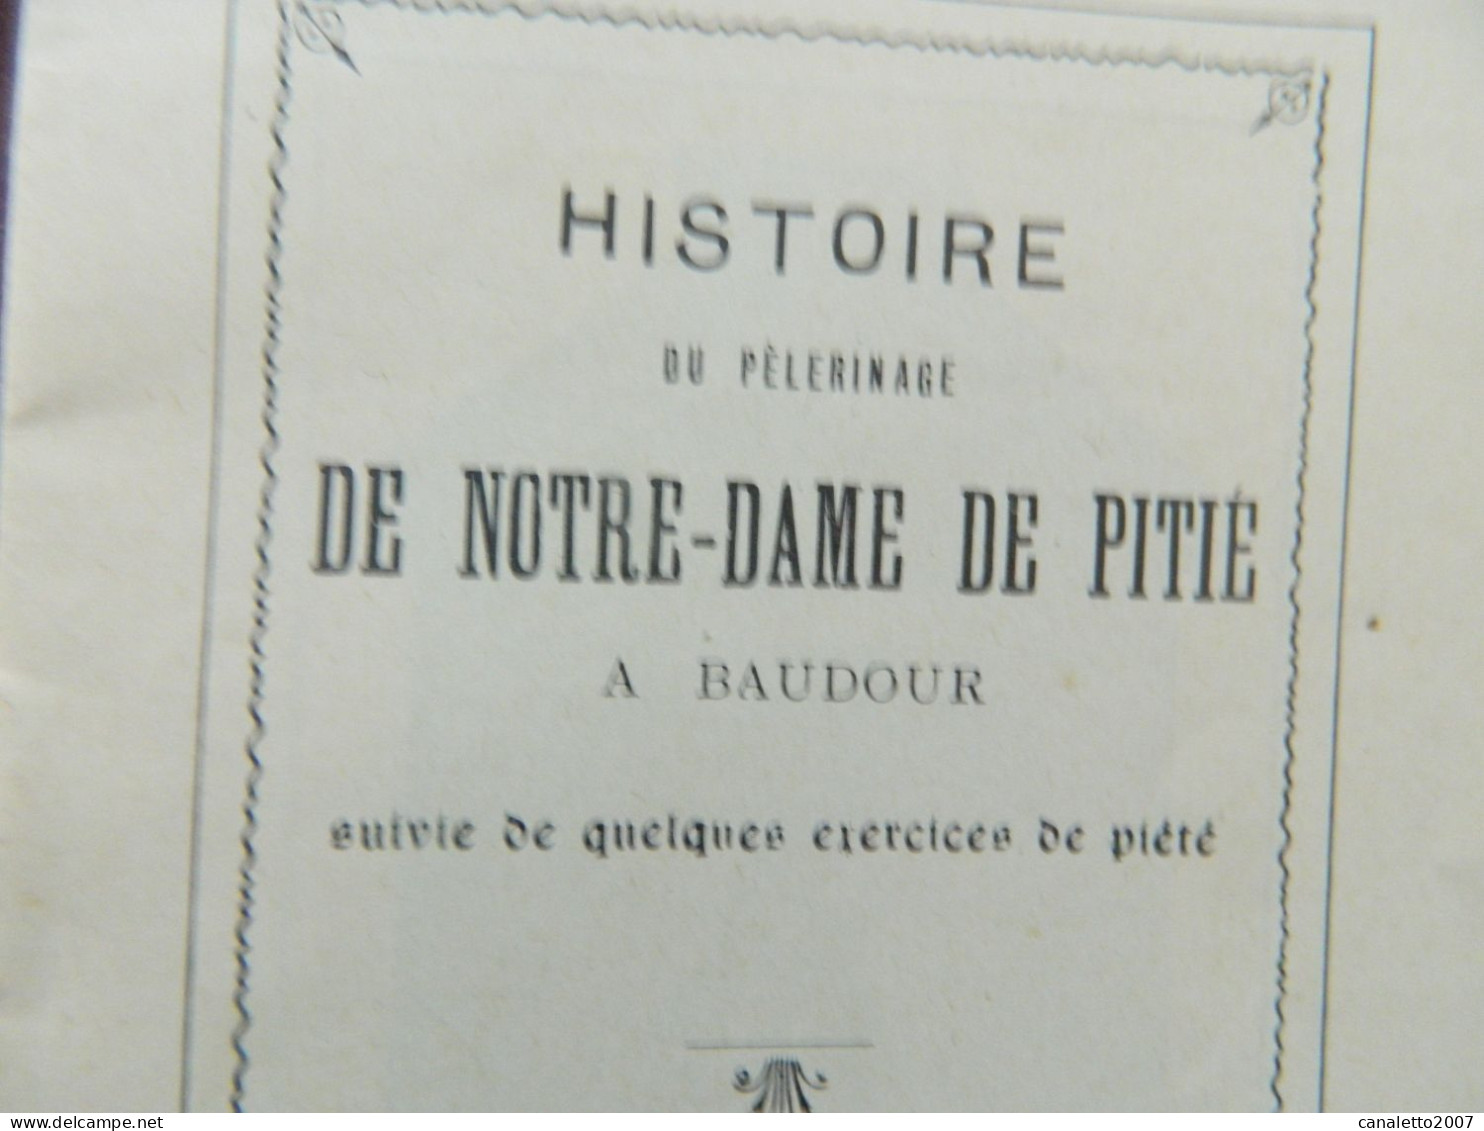 BAUDOUR: PETIT LIVRET DE L'HISTOIRE DU PELERINAGE DE N-D DE PITIE A BAUDOUR -16 PAGES - Belgium